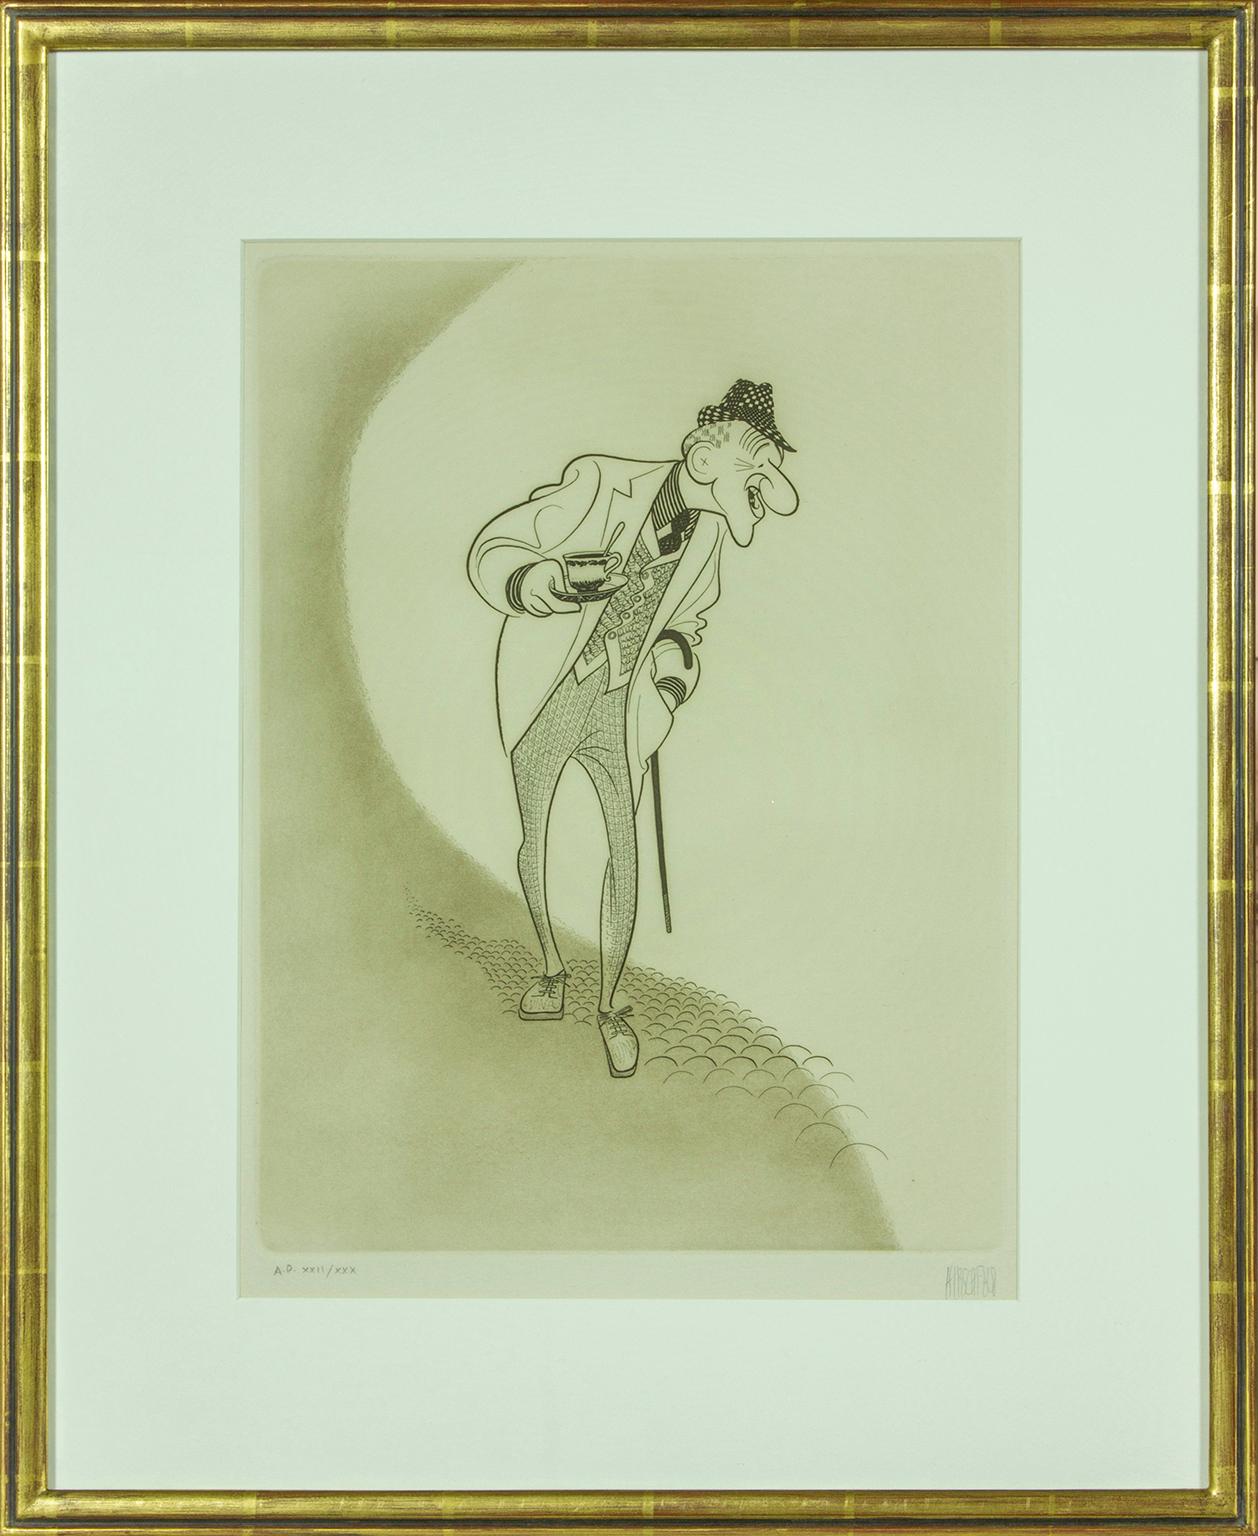 Portrait Print Albert Al Hirschfeld - "Jimmy During" gravure originale d'Al Hirschfeld. épreuve de l'artiste signée à la main.